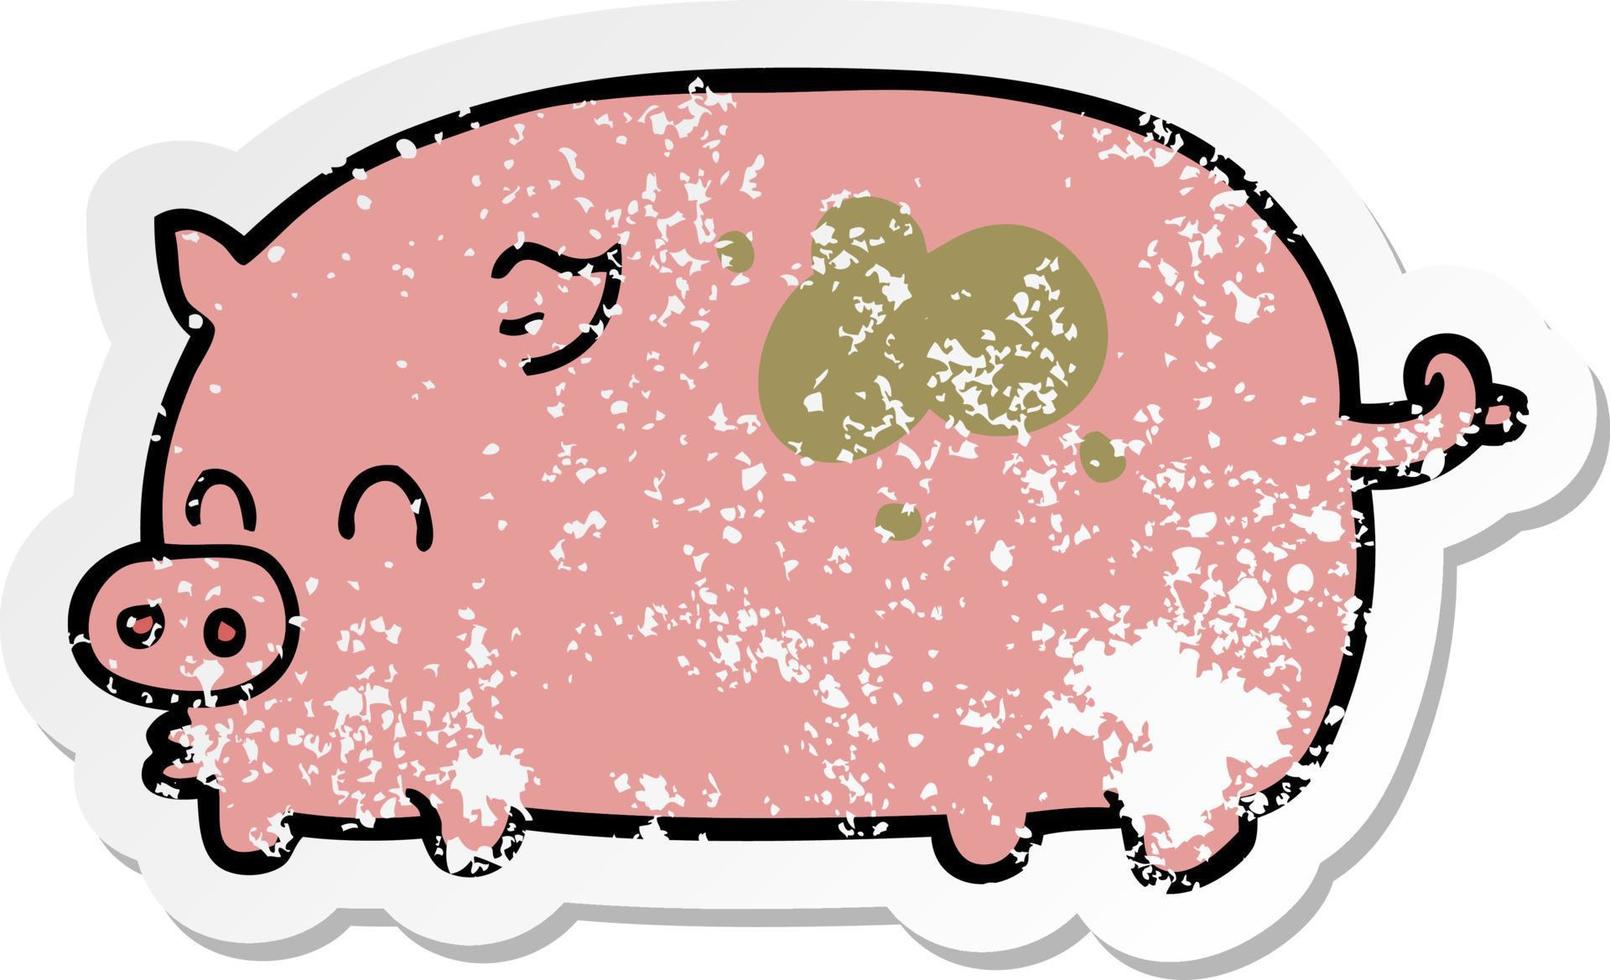 bedrövad klistermärke av en söt tecknad gris vektor